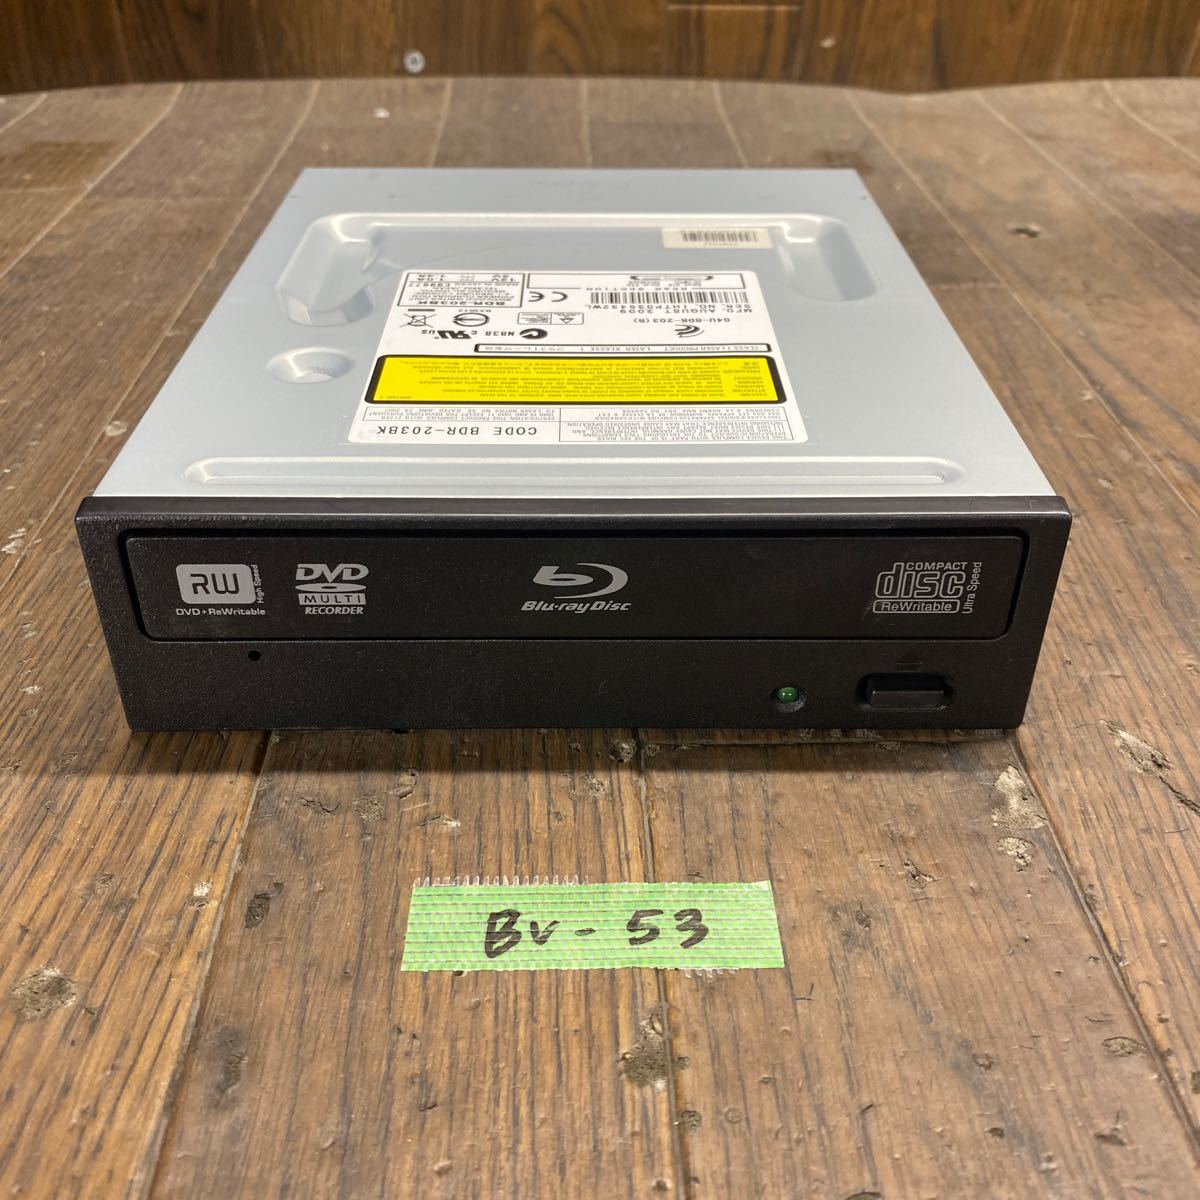 BV-53 激安 Blu-ray ドライブ DVD デスクトップ用 Pioneer BDR-203BK 2009年製 Blu-ray、DVD再生確認済み 中古品_画像1